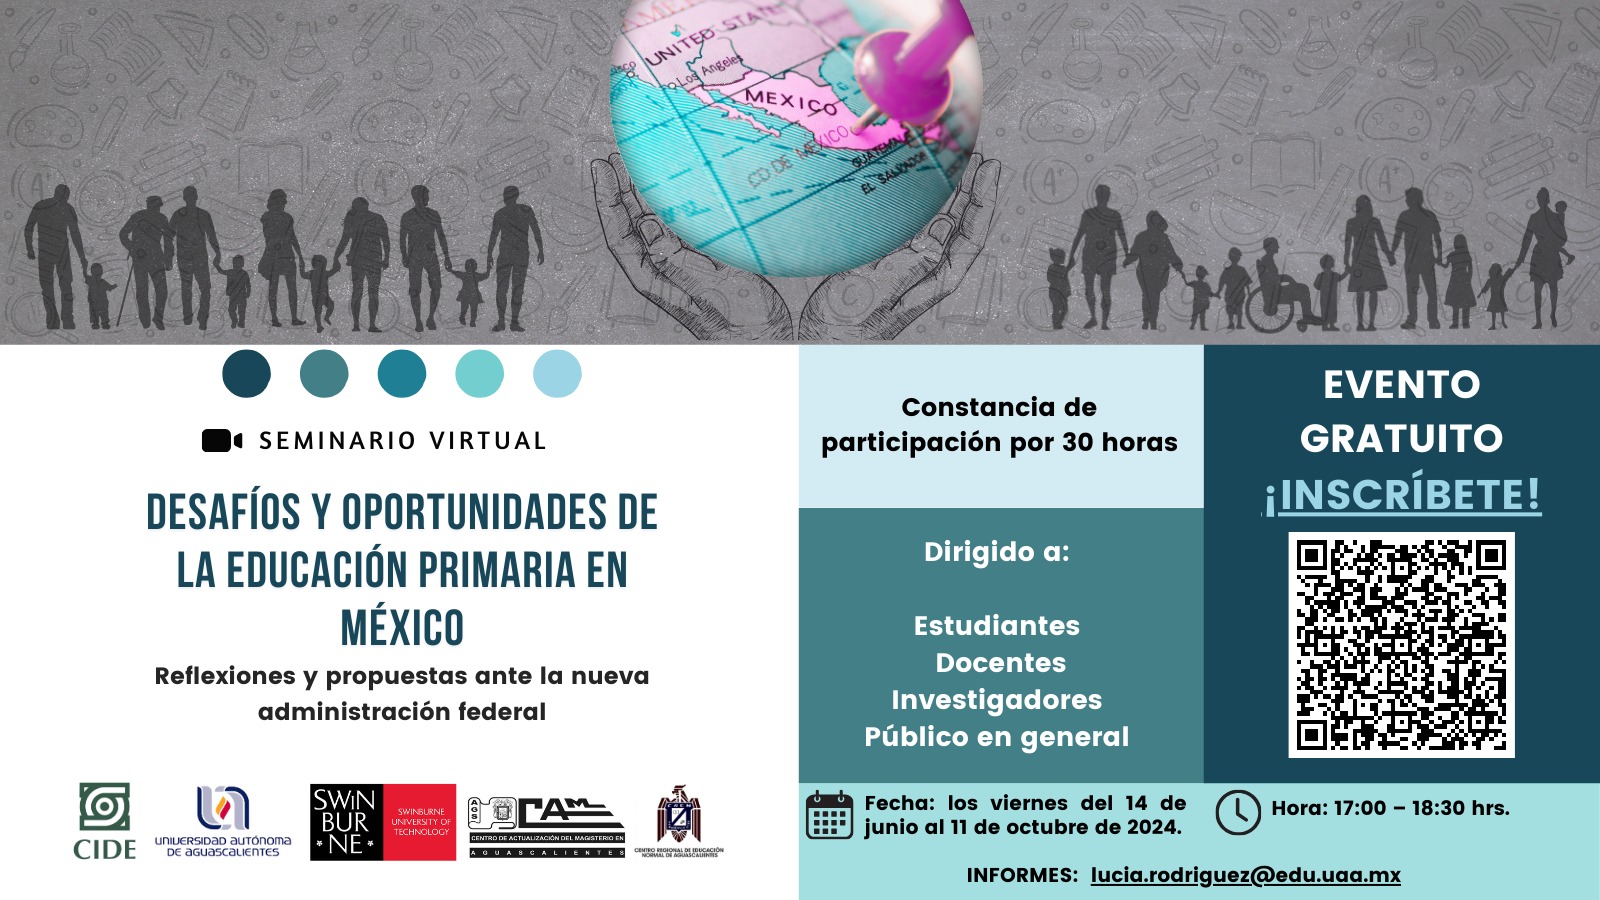 Seminario virtual: Desafios y oportunidades de la educación primaria en México